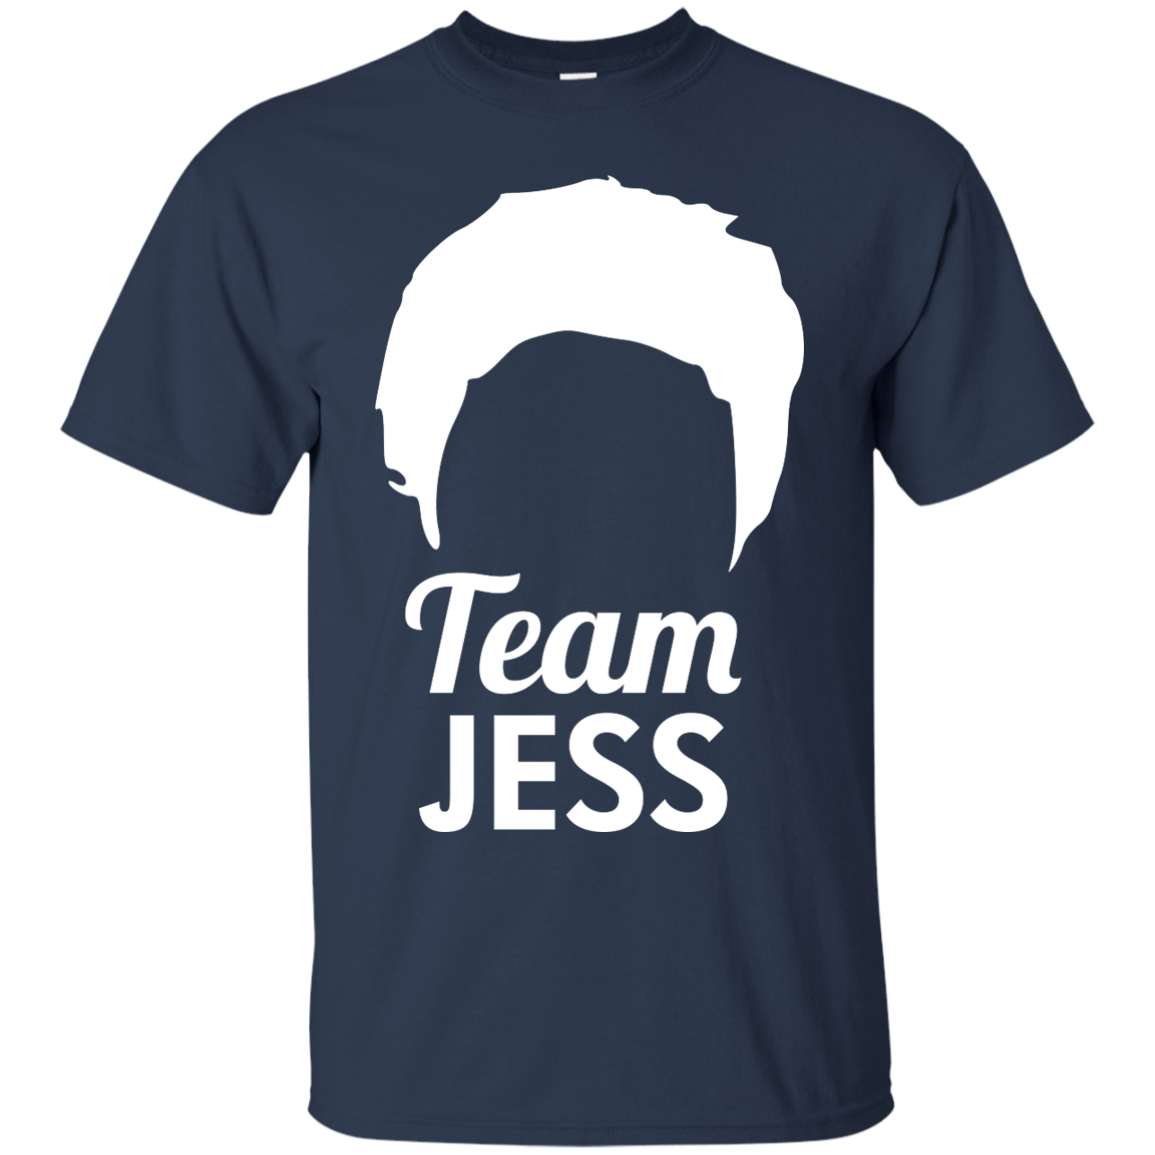 Team Jess Gilmore Girls shirt, sweatshirt